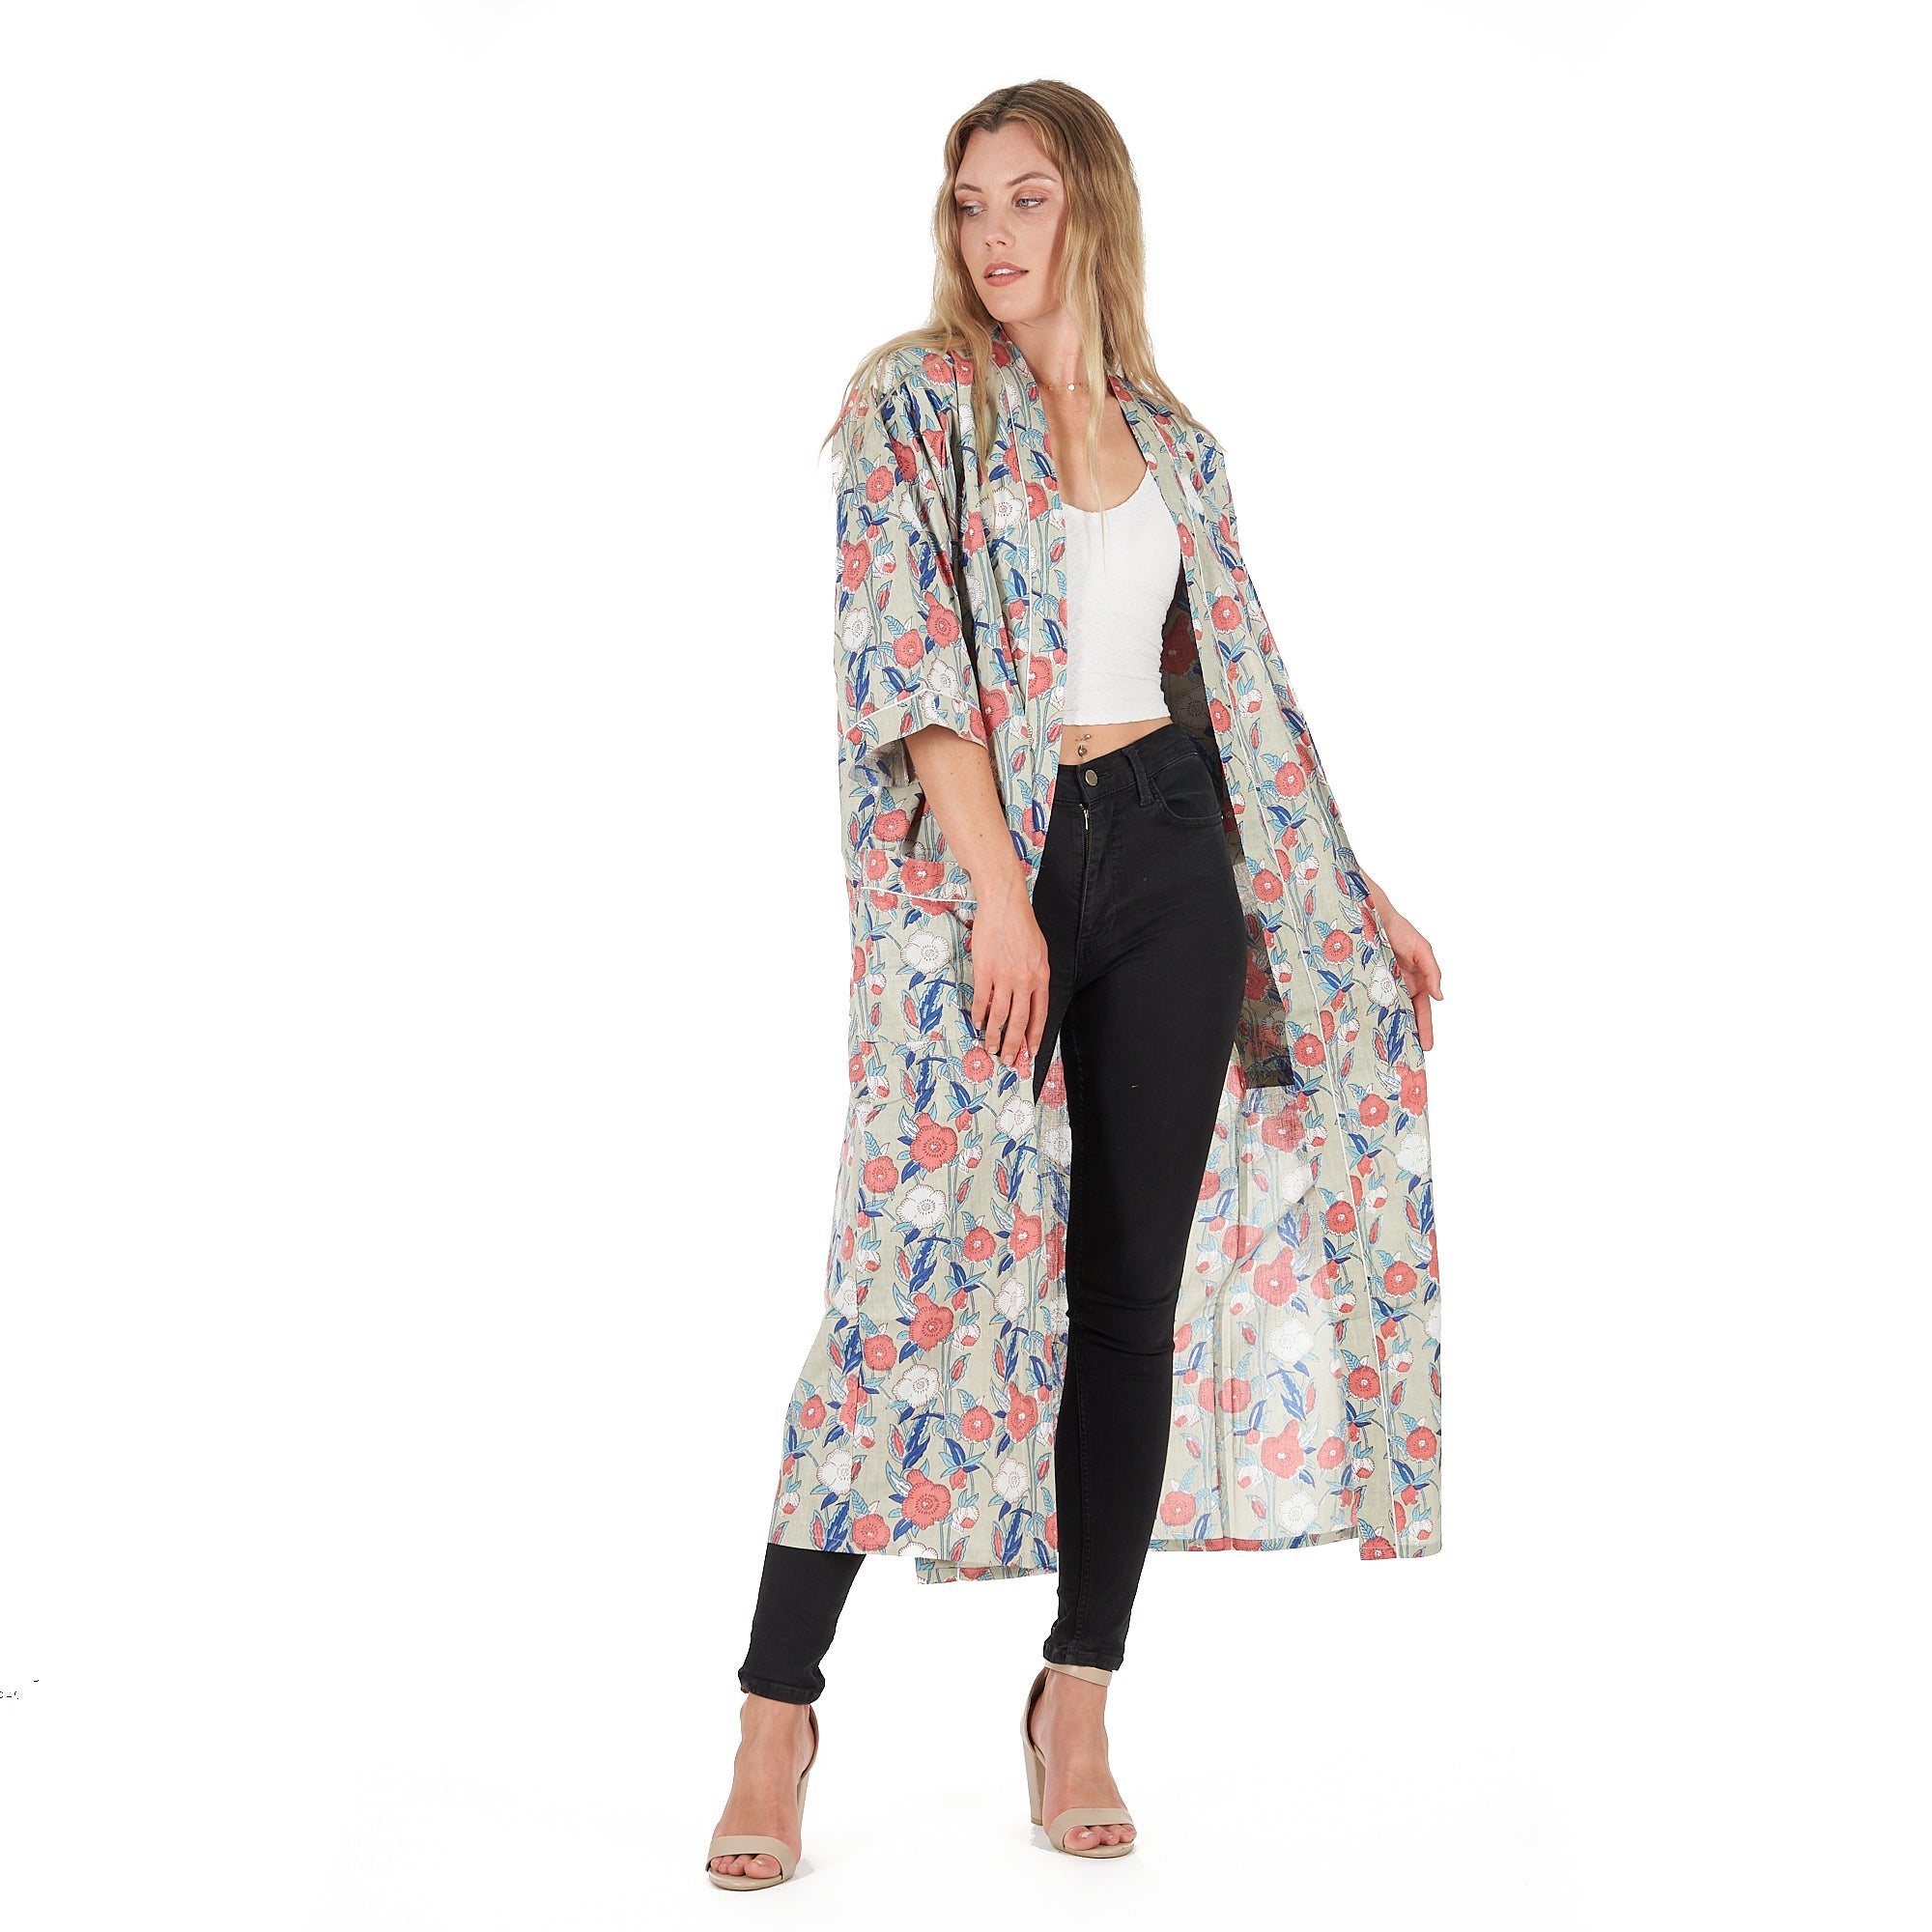 'Leisurely Luxe' 100% Cotton Kimono Robe